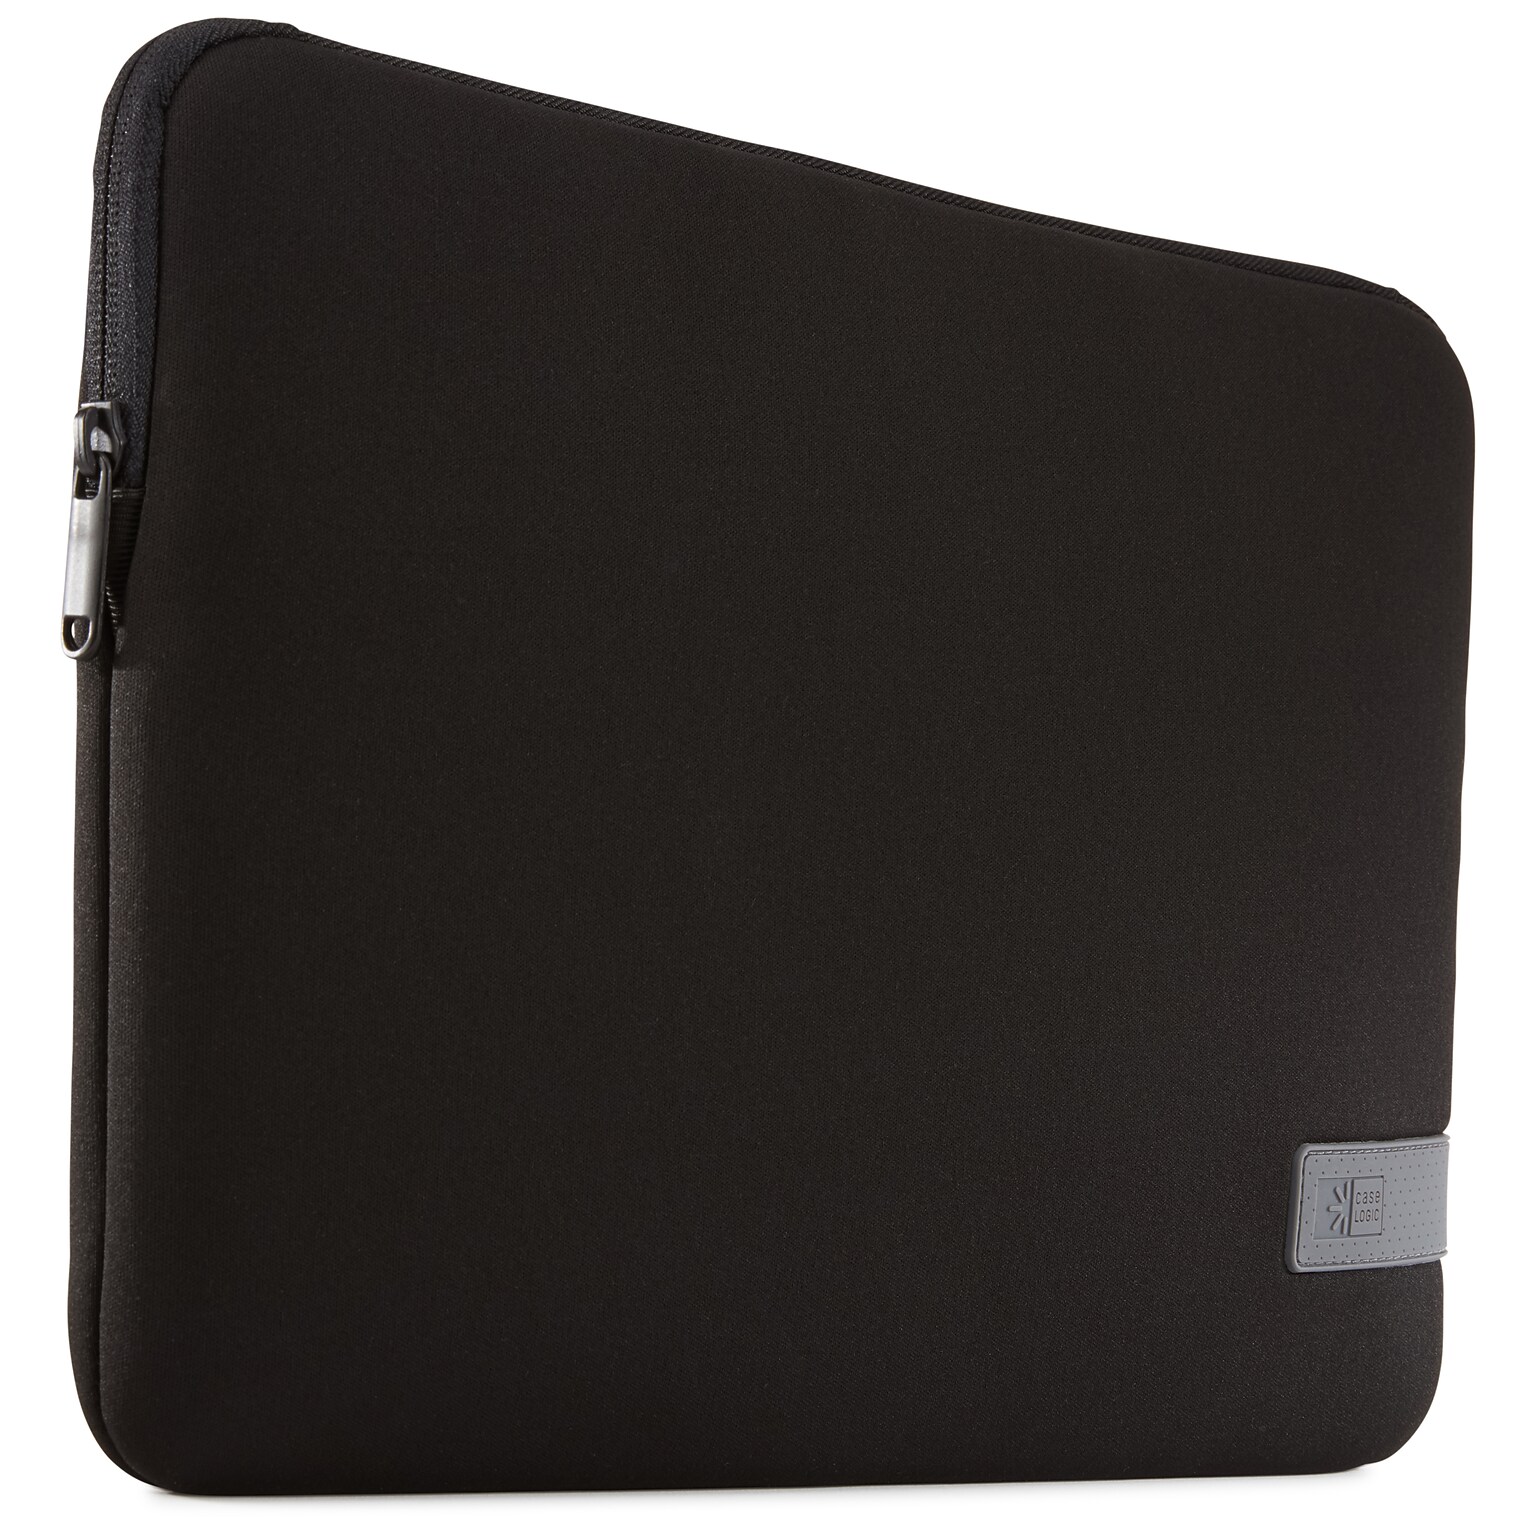 Case Logic Polyester Laptop Sleeve for 13.3 Laptops, Dark Blue (3203959)